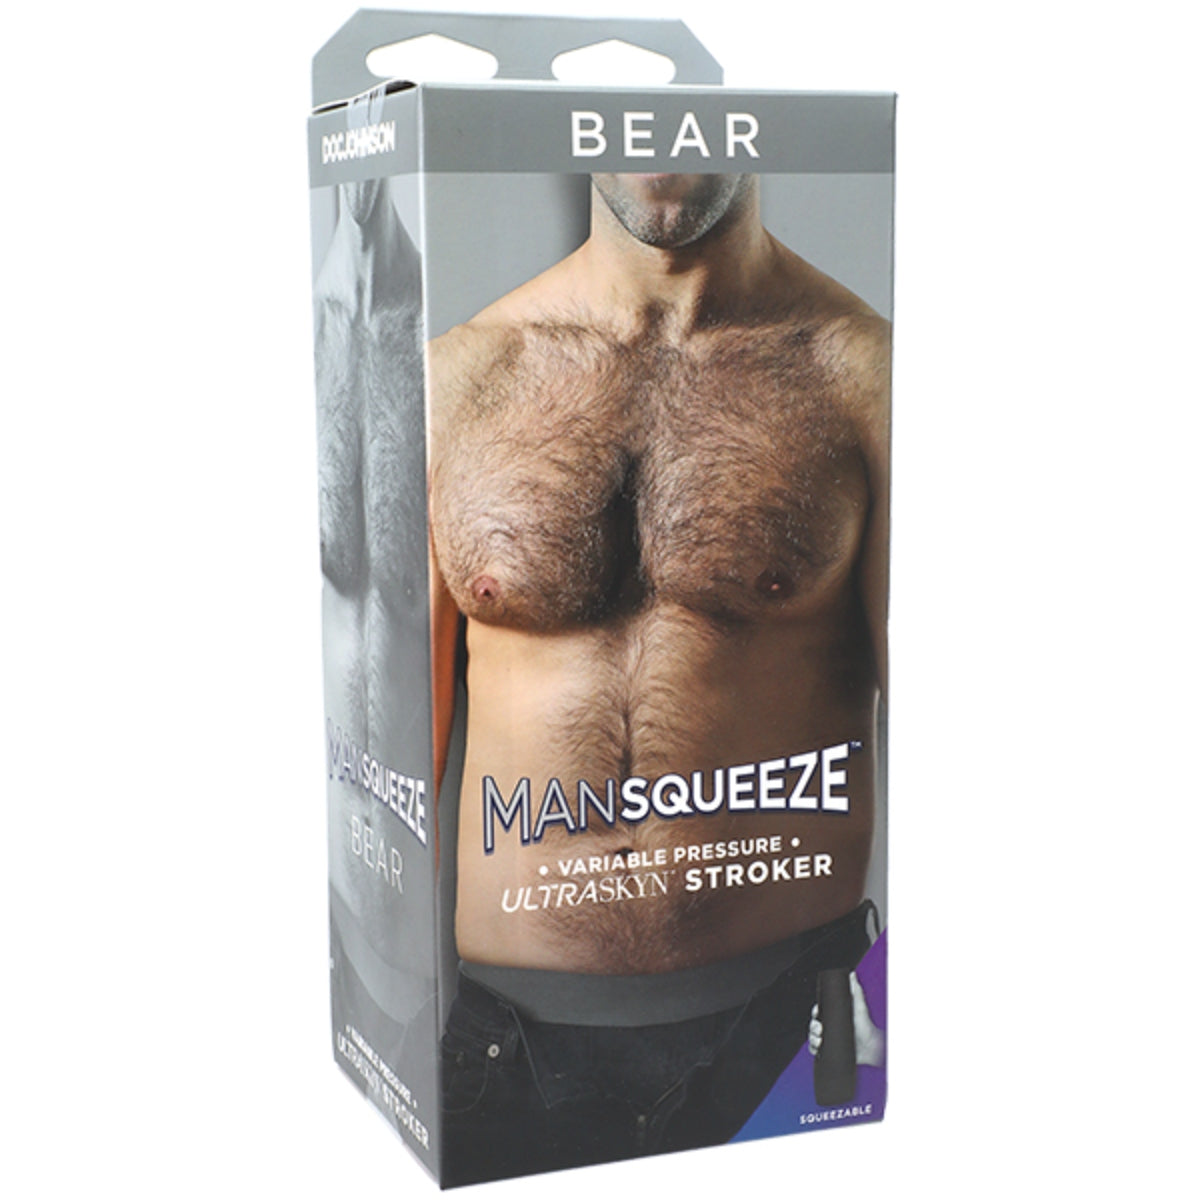 ManSqueeze Bear Ultraskyn Butt Masturbator